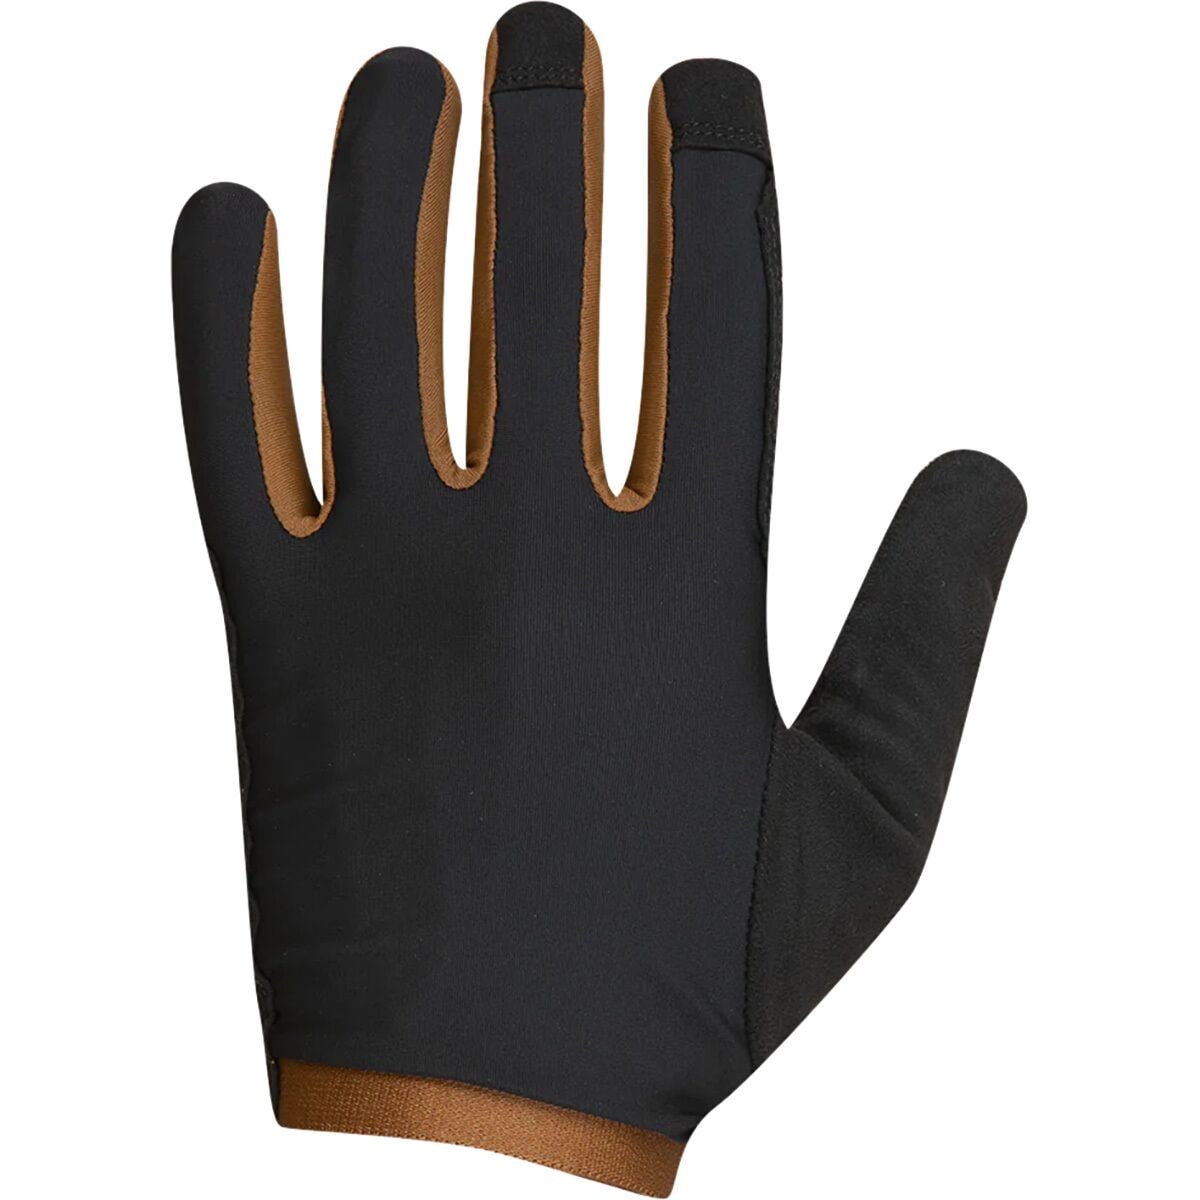 PEARL iZUMi Expedition Gel Full Finger Glove - Men's